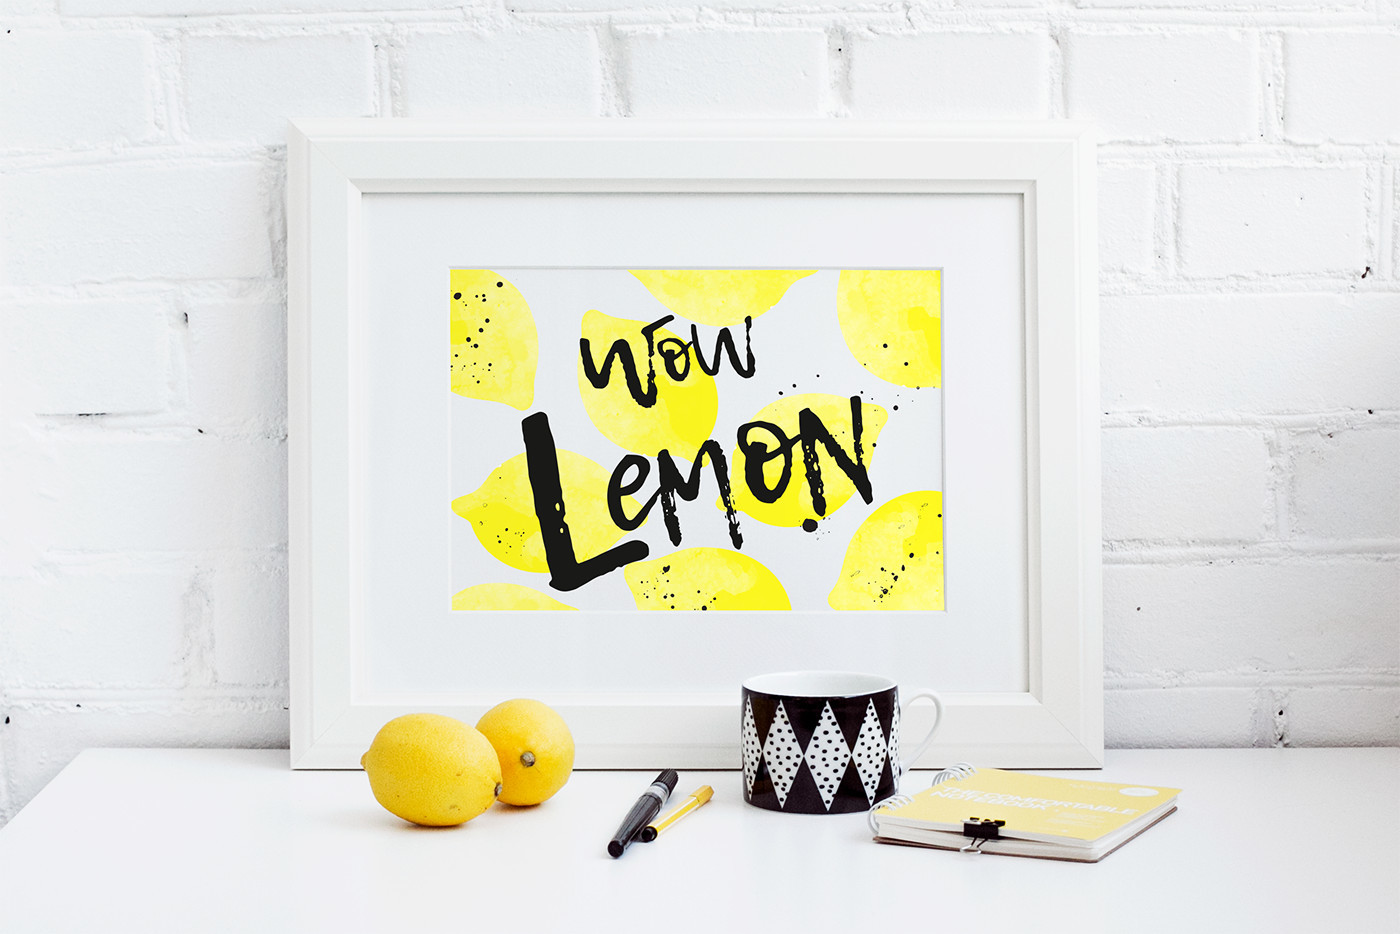 Lemon Tuesday